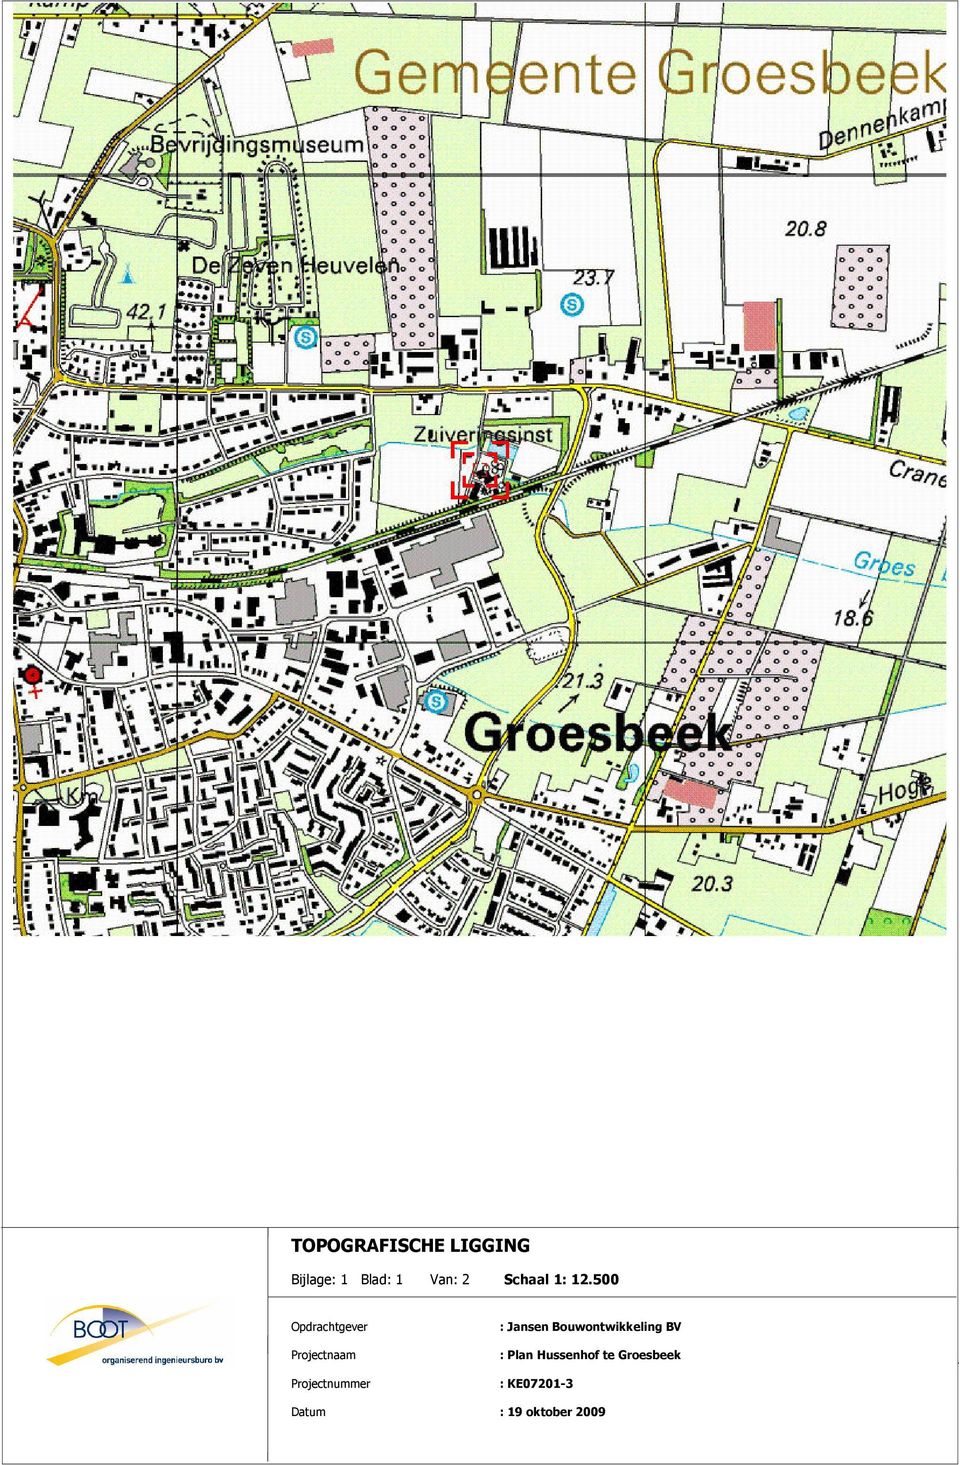 Hussenhof te Groesbeek Projectnummer revisiedatum : 19 oktober